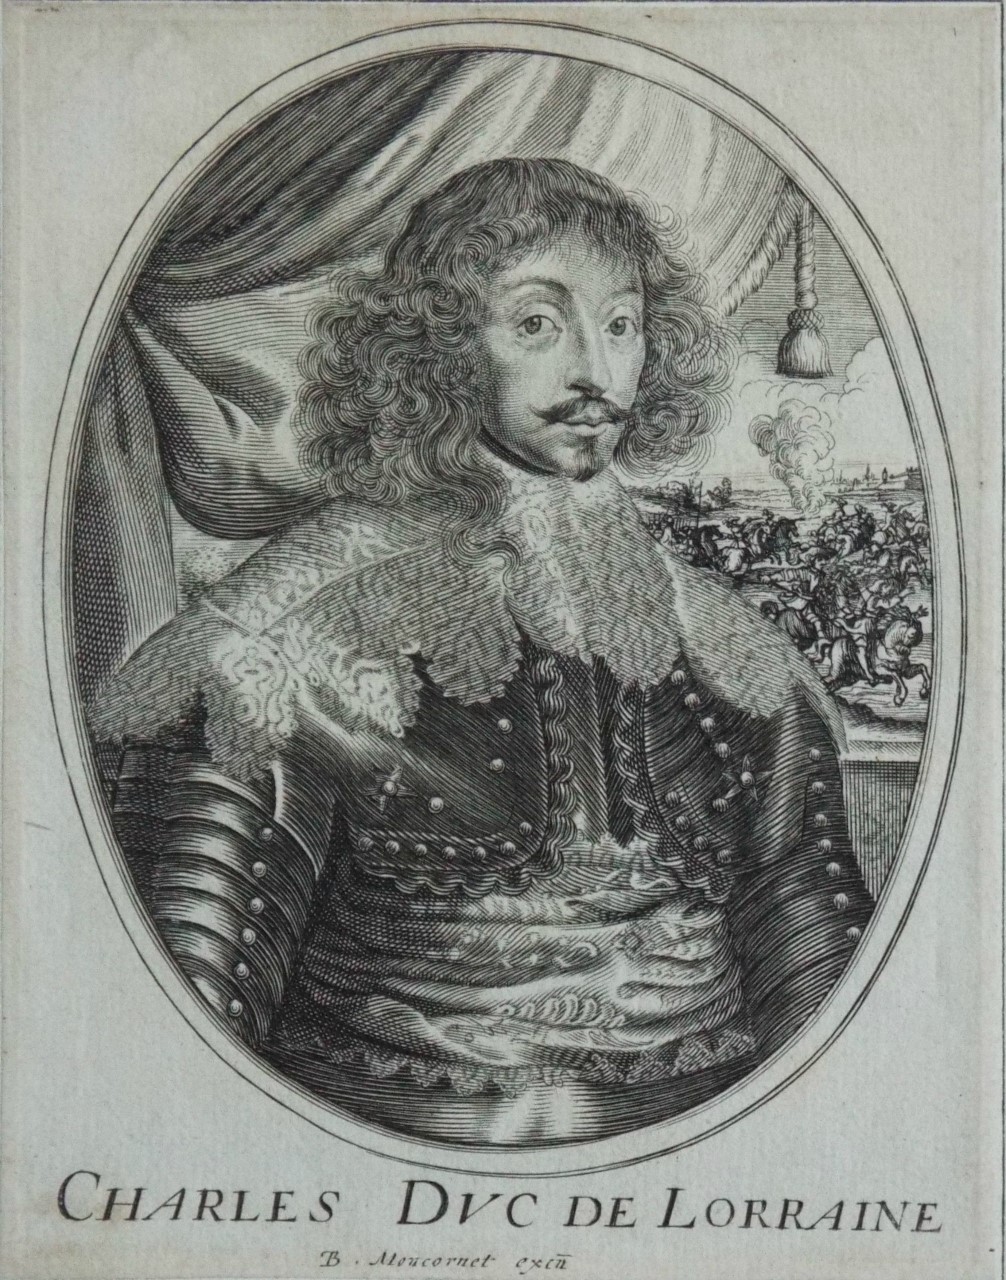 Print - Charles Duc de Loraine - Moncornet